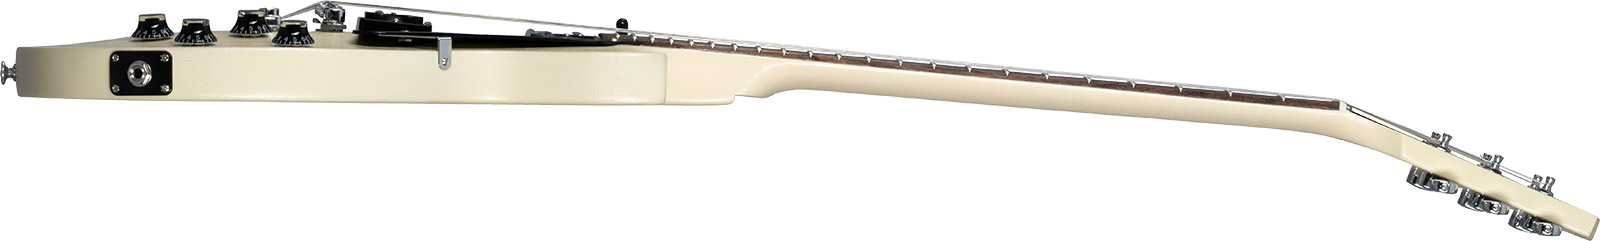 Gibson Les Paul Modern Lite 2h Ht Rw - Tv Wheat - Single cut electric guitar - Variation 2